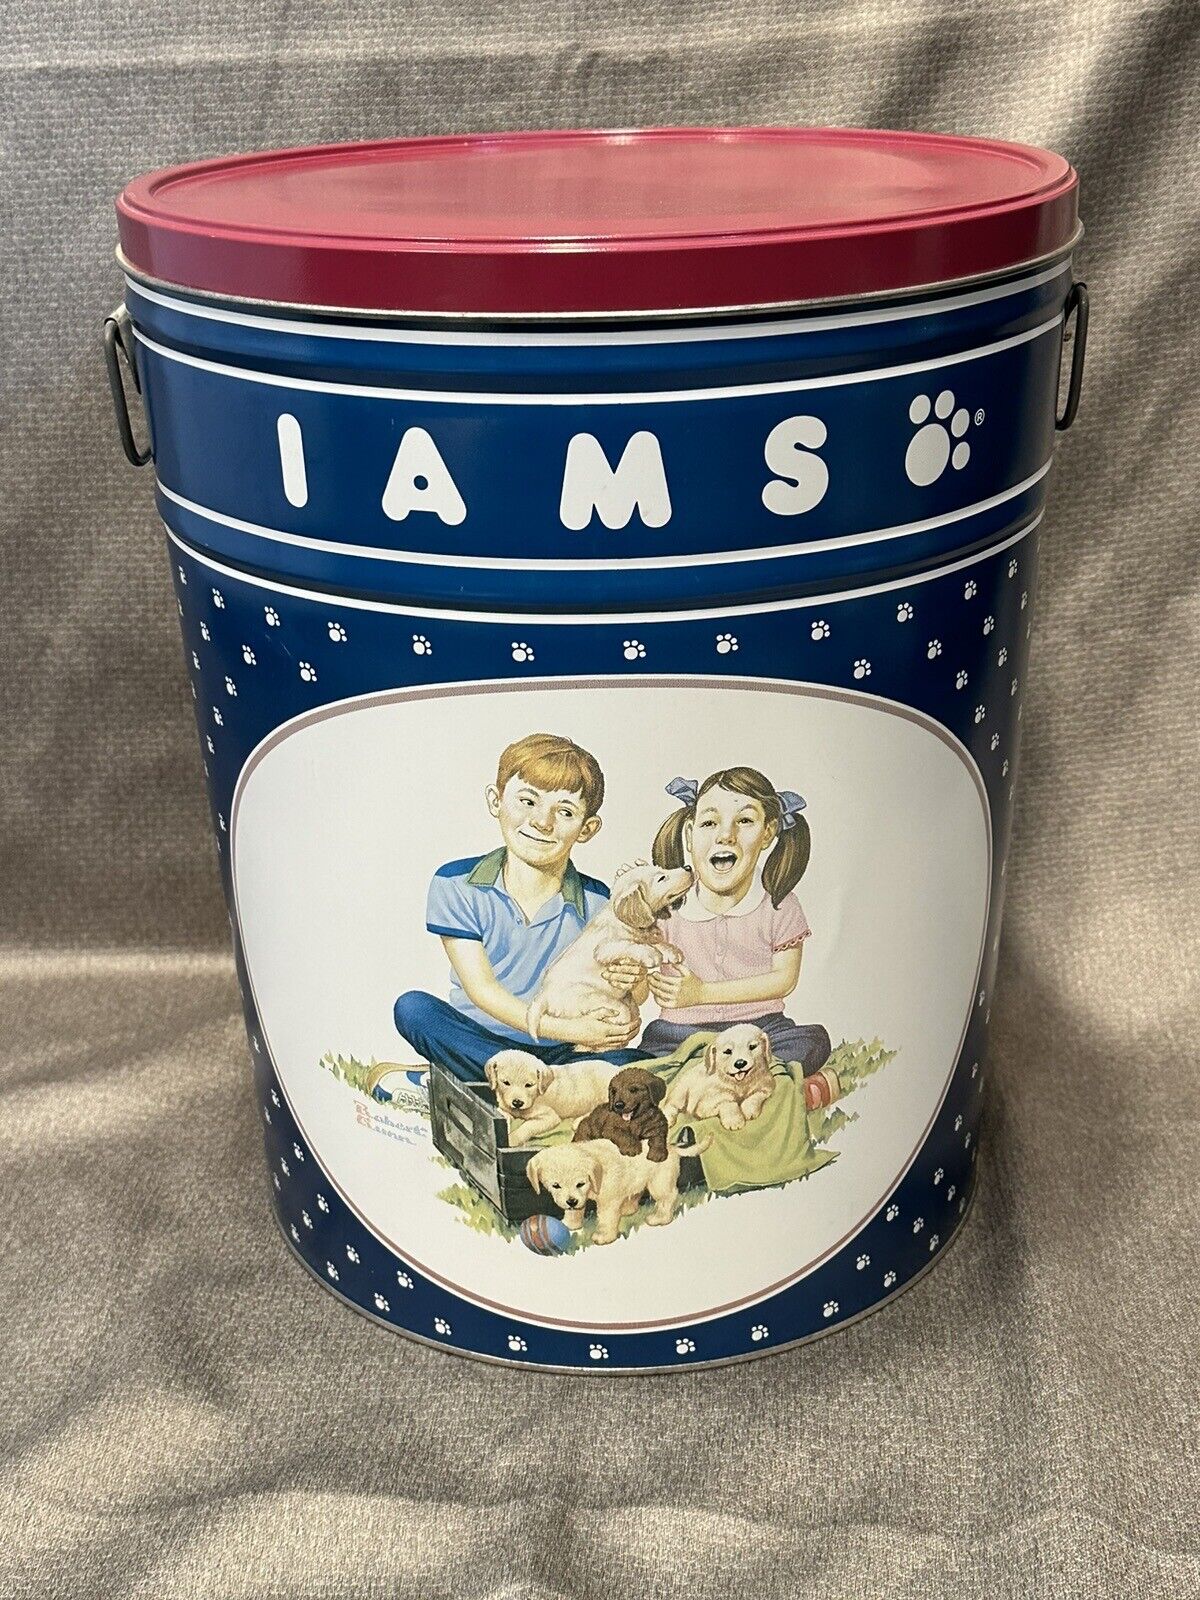 Vintage Iams Dog Food Metal Tin Container w/Lid Robert Gunn Art USA